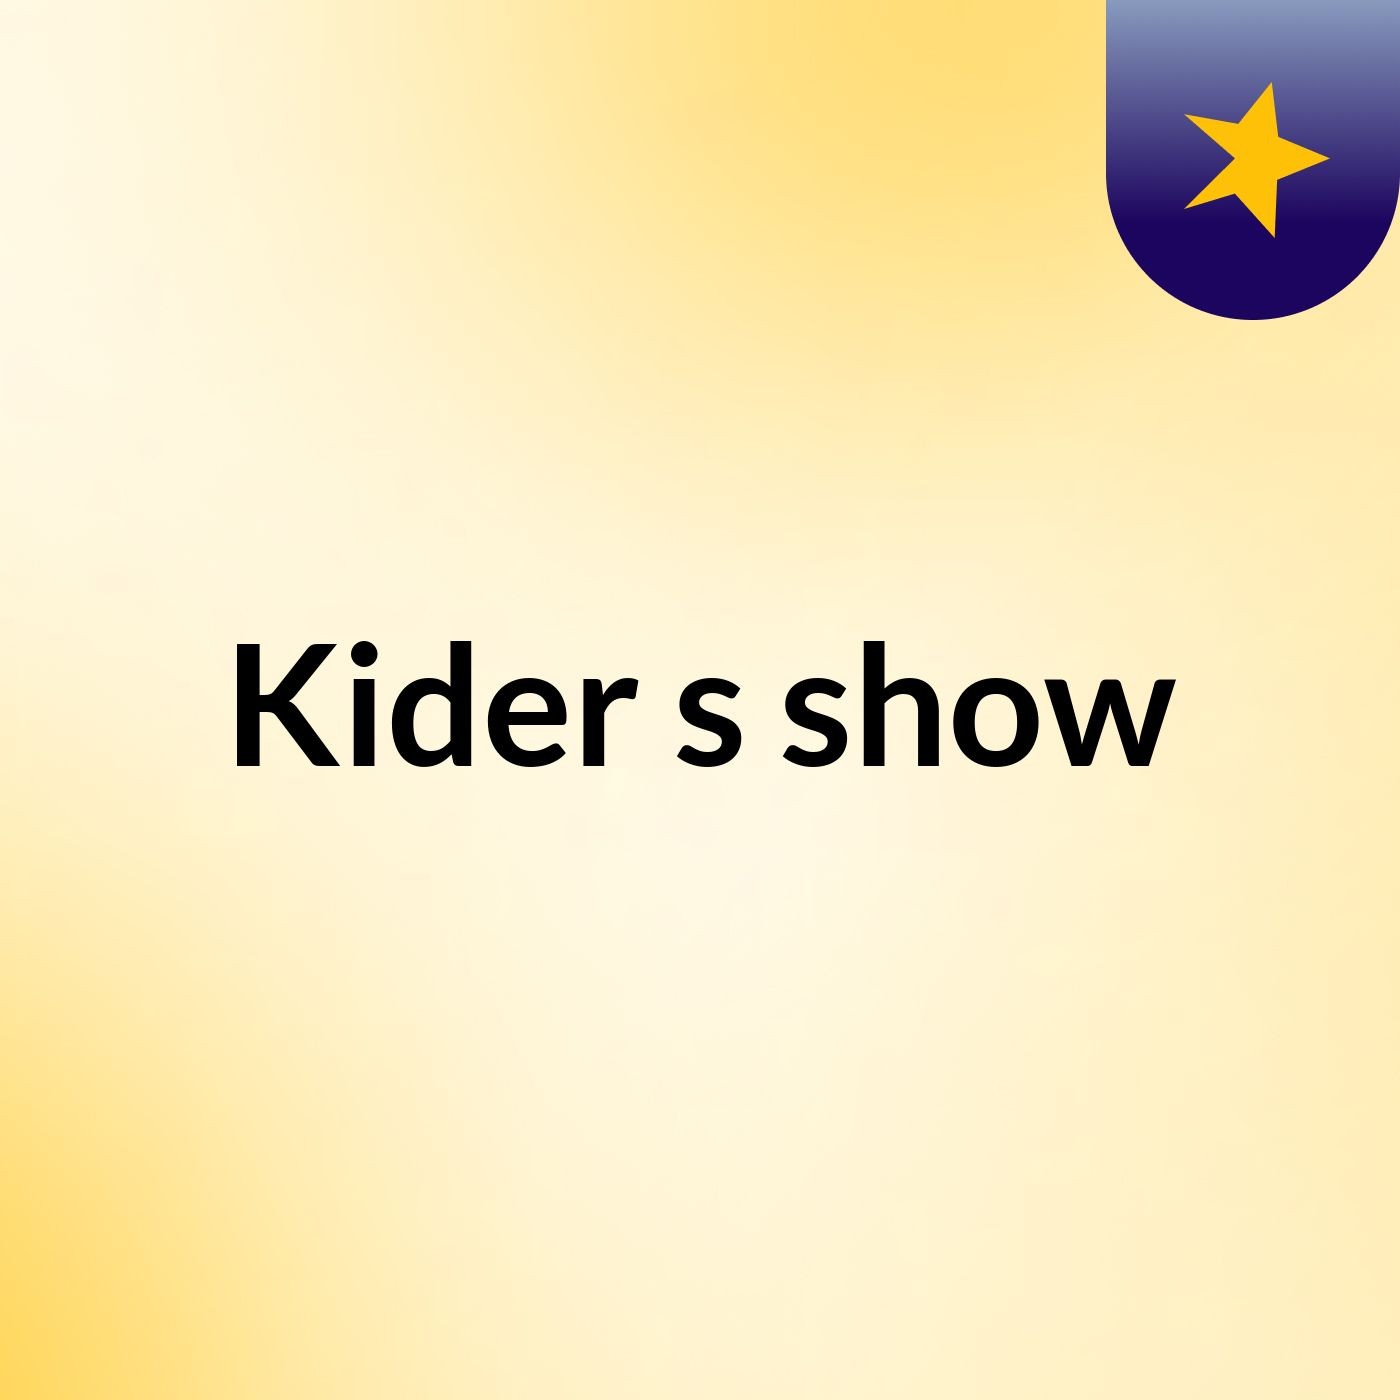 Kider's show